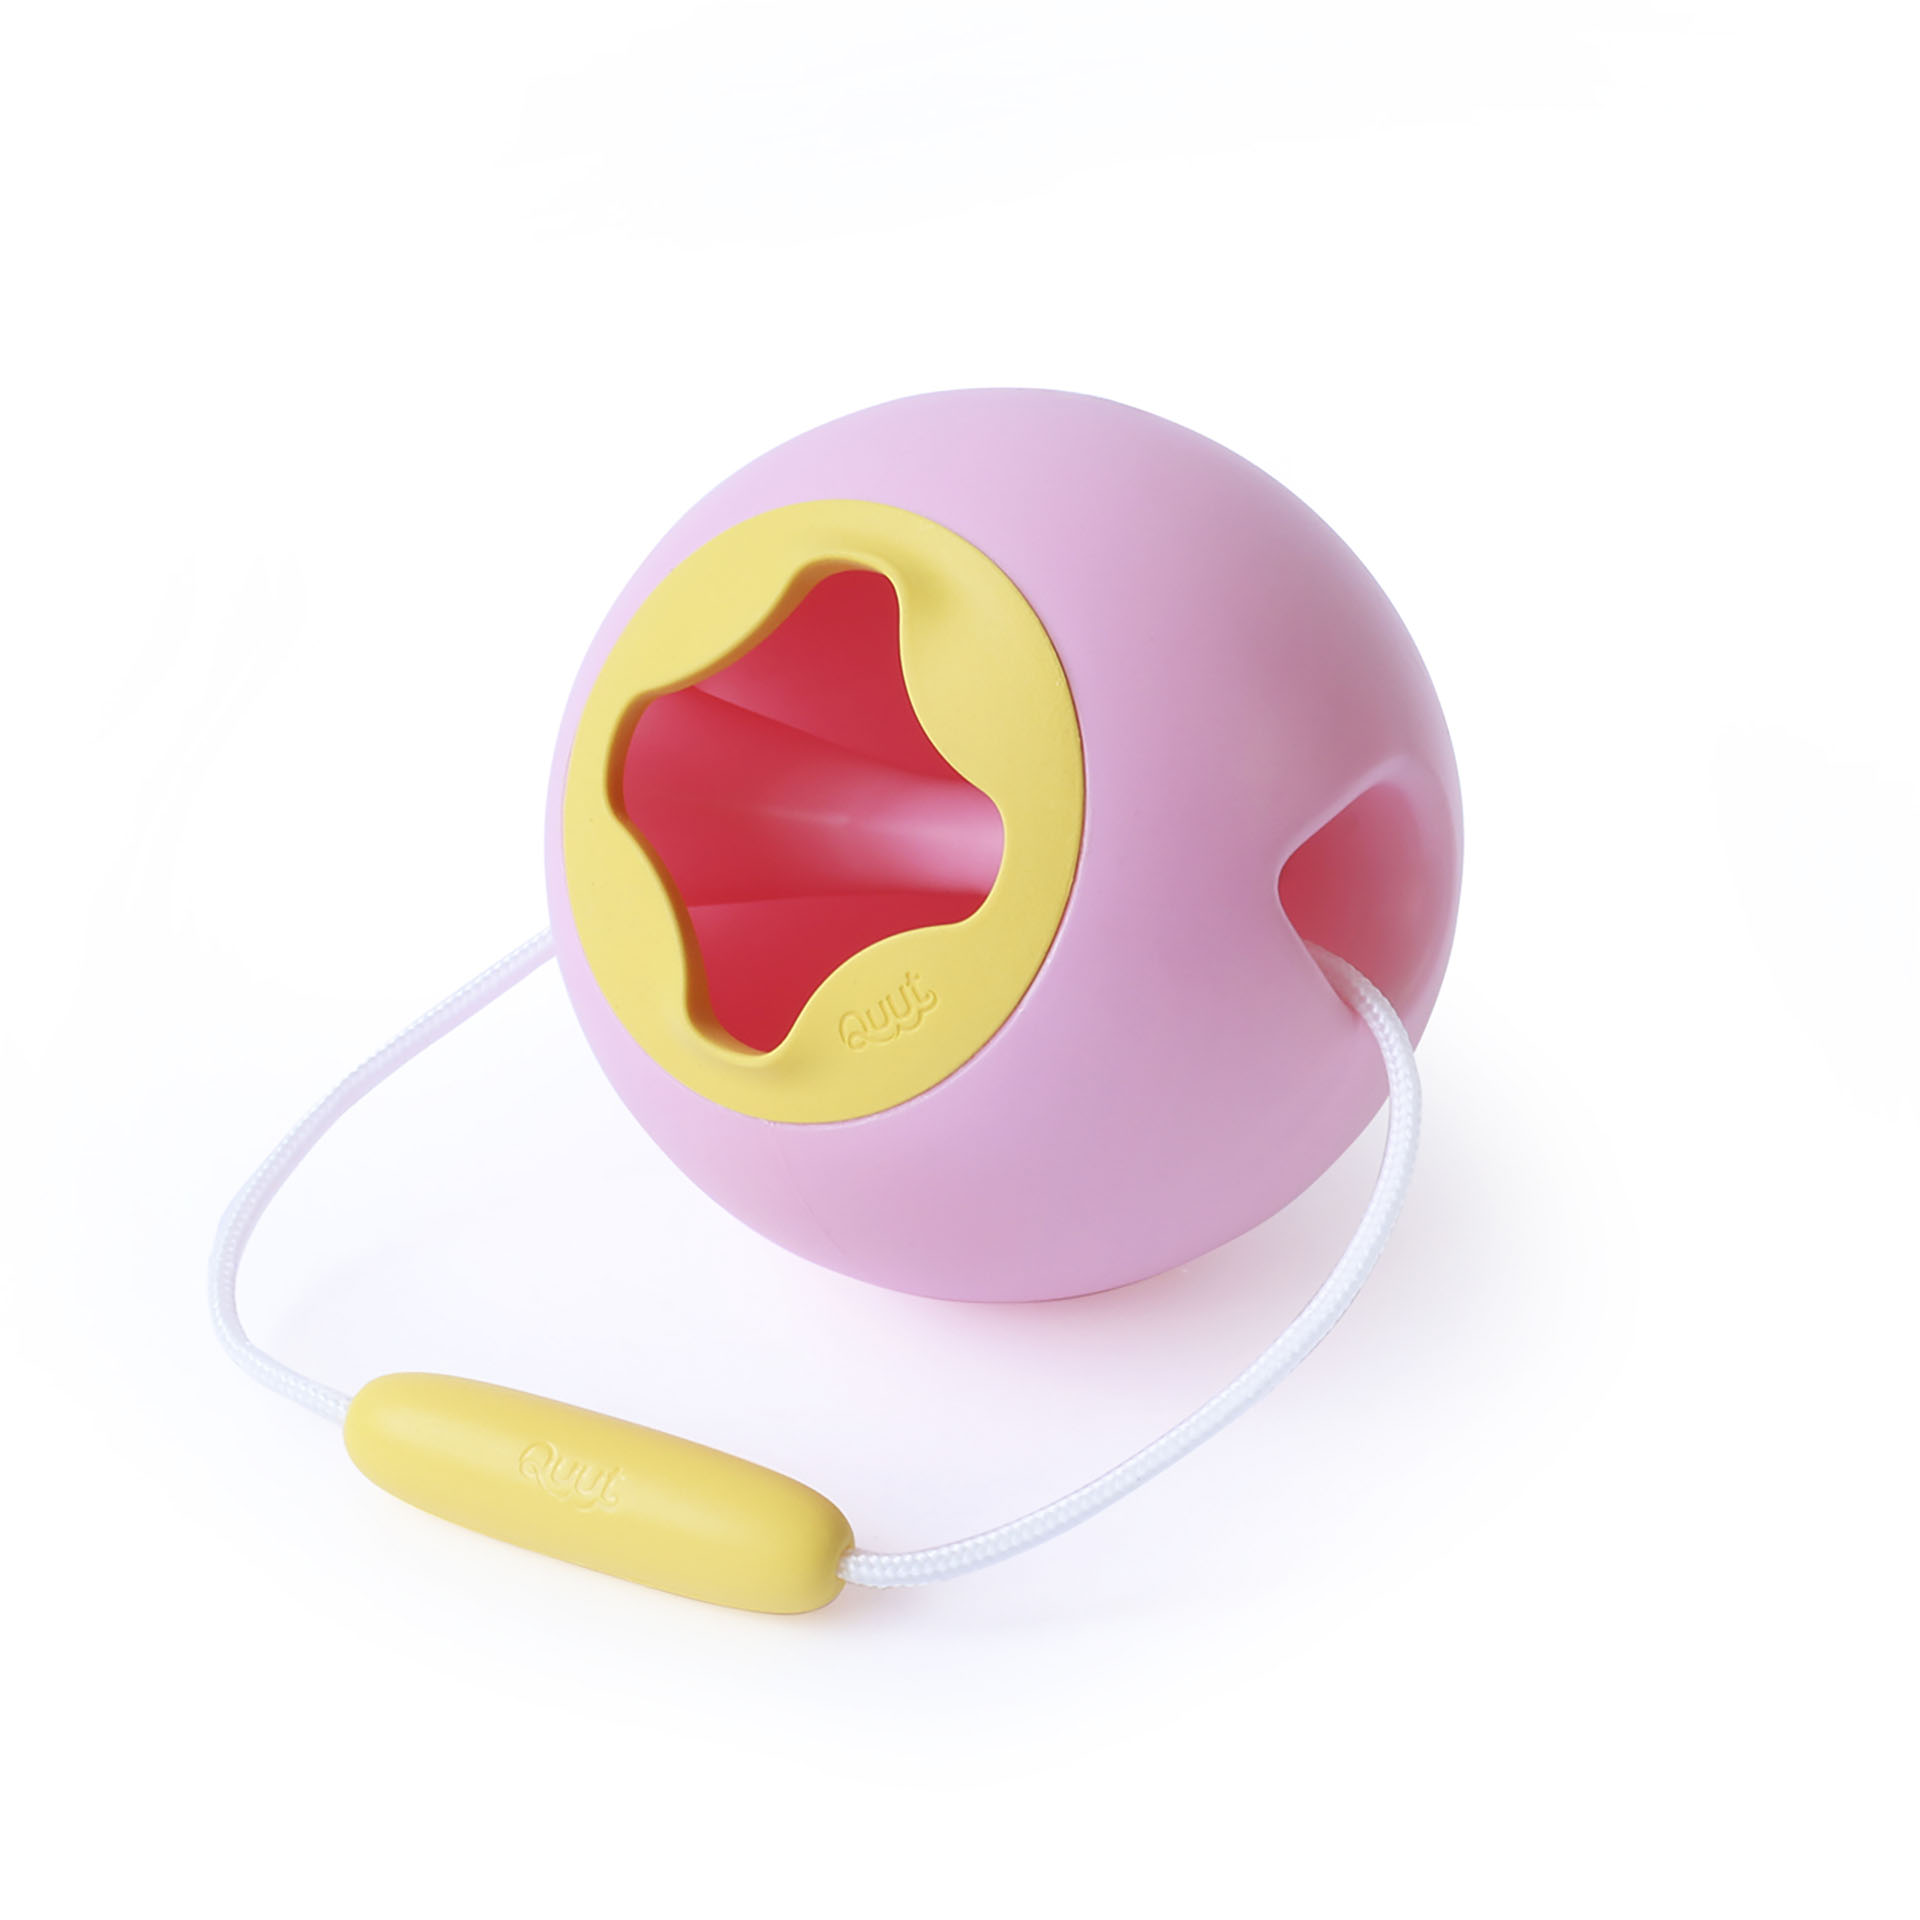 Eimer "Mini Ballo" pink - Quut Sandspielzeug 